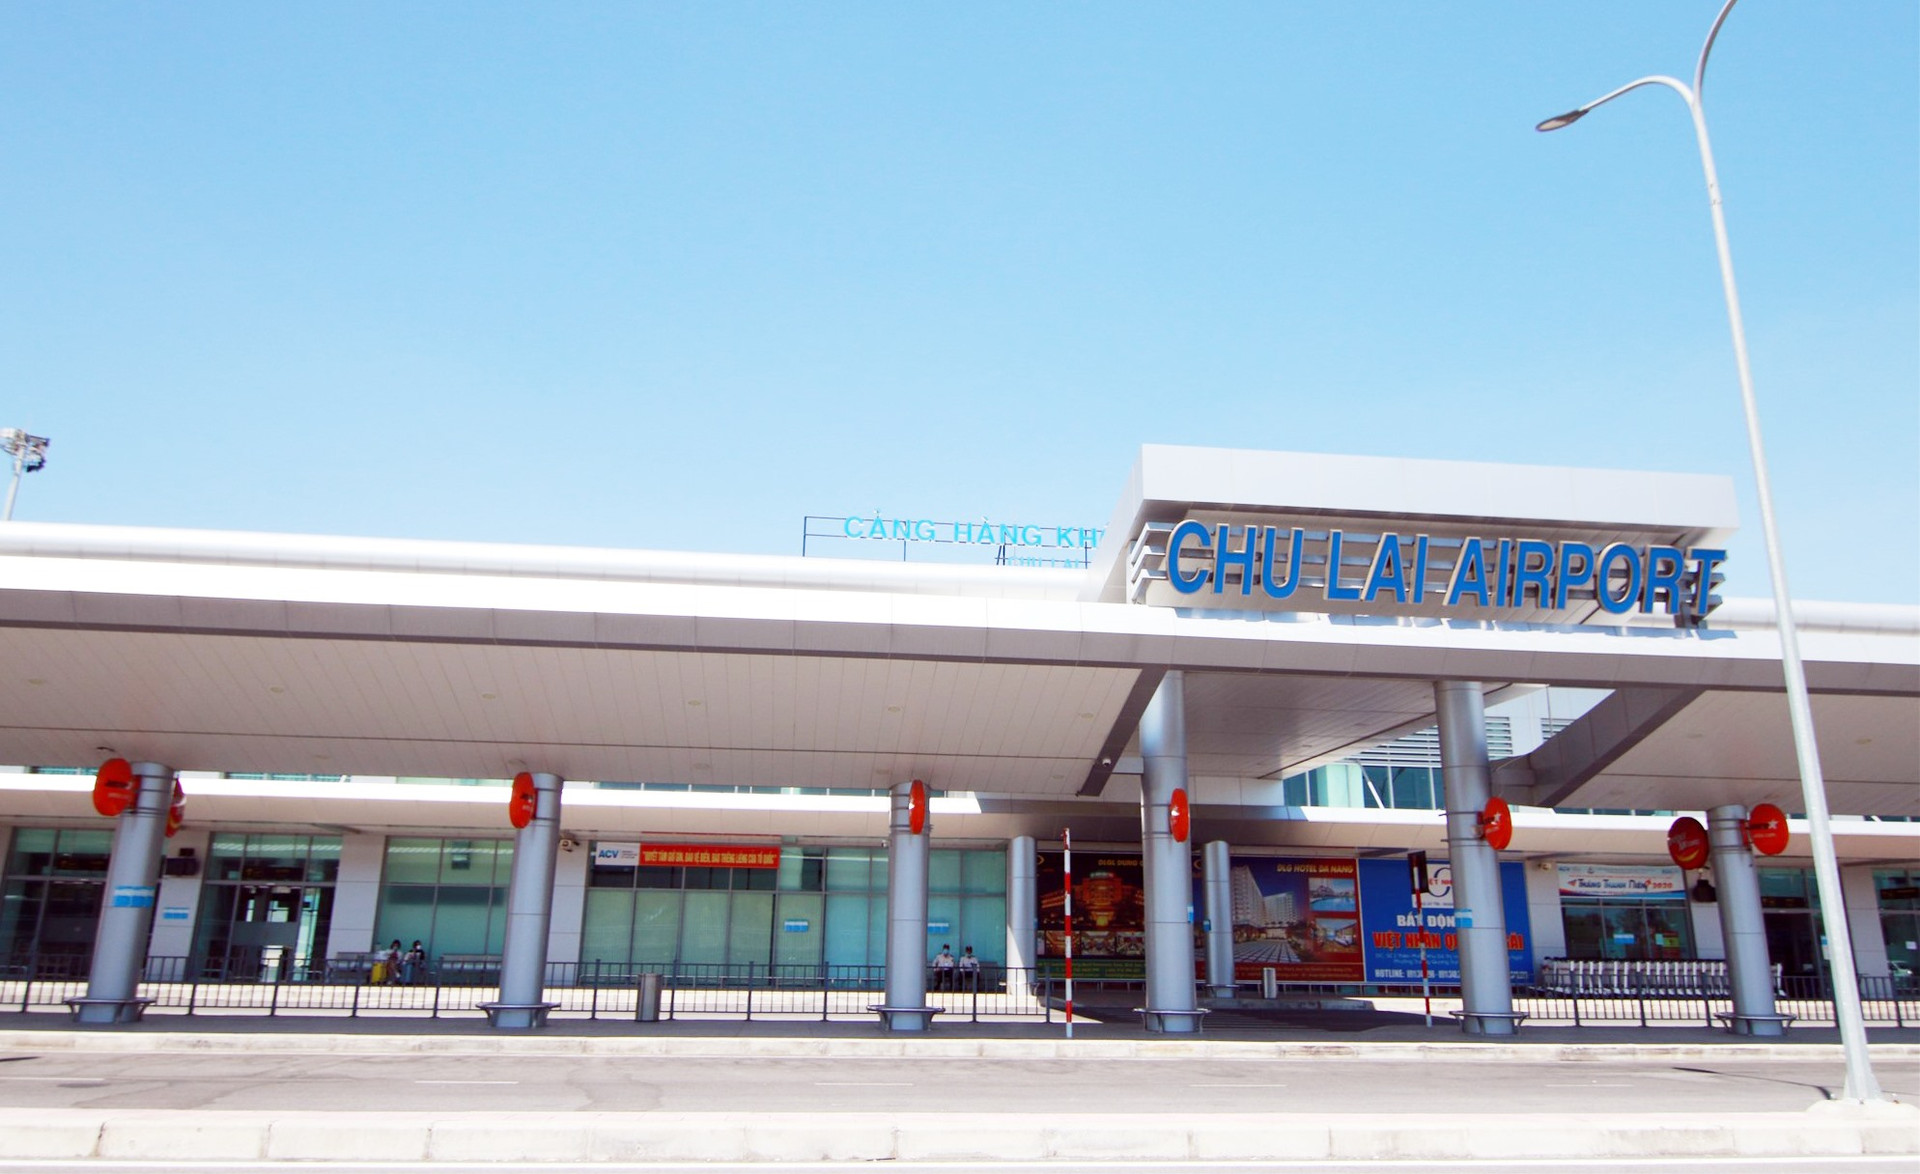 Sân bay Chu Lai đứng trước cơ hội lớn để phát triển trở thành cảng hàng không quốc tế lớn, đáp ứng yêu cầu vận tải hành khách, hàng hóa và trung tâm sửa chữa, bảo dưỡng tàu bay. Ảnh: T.C